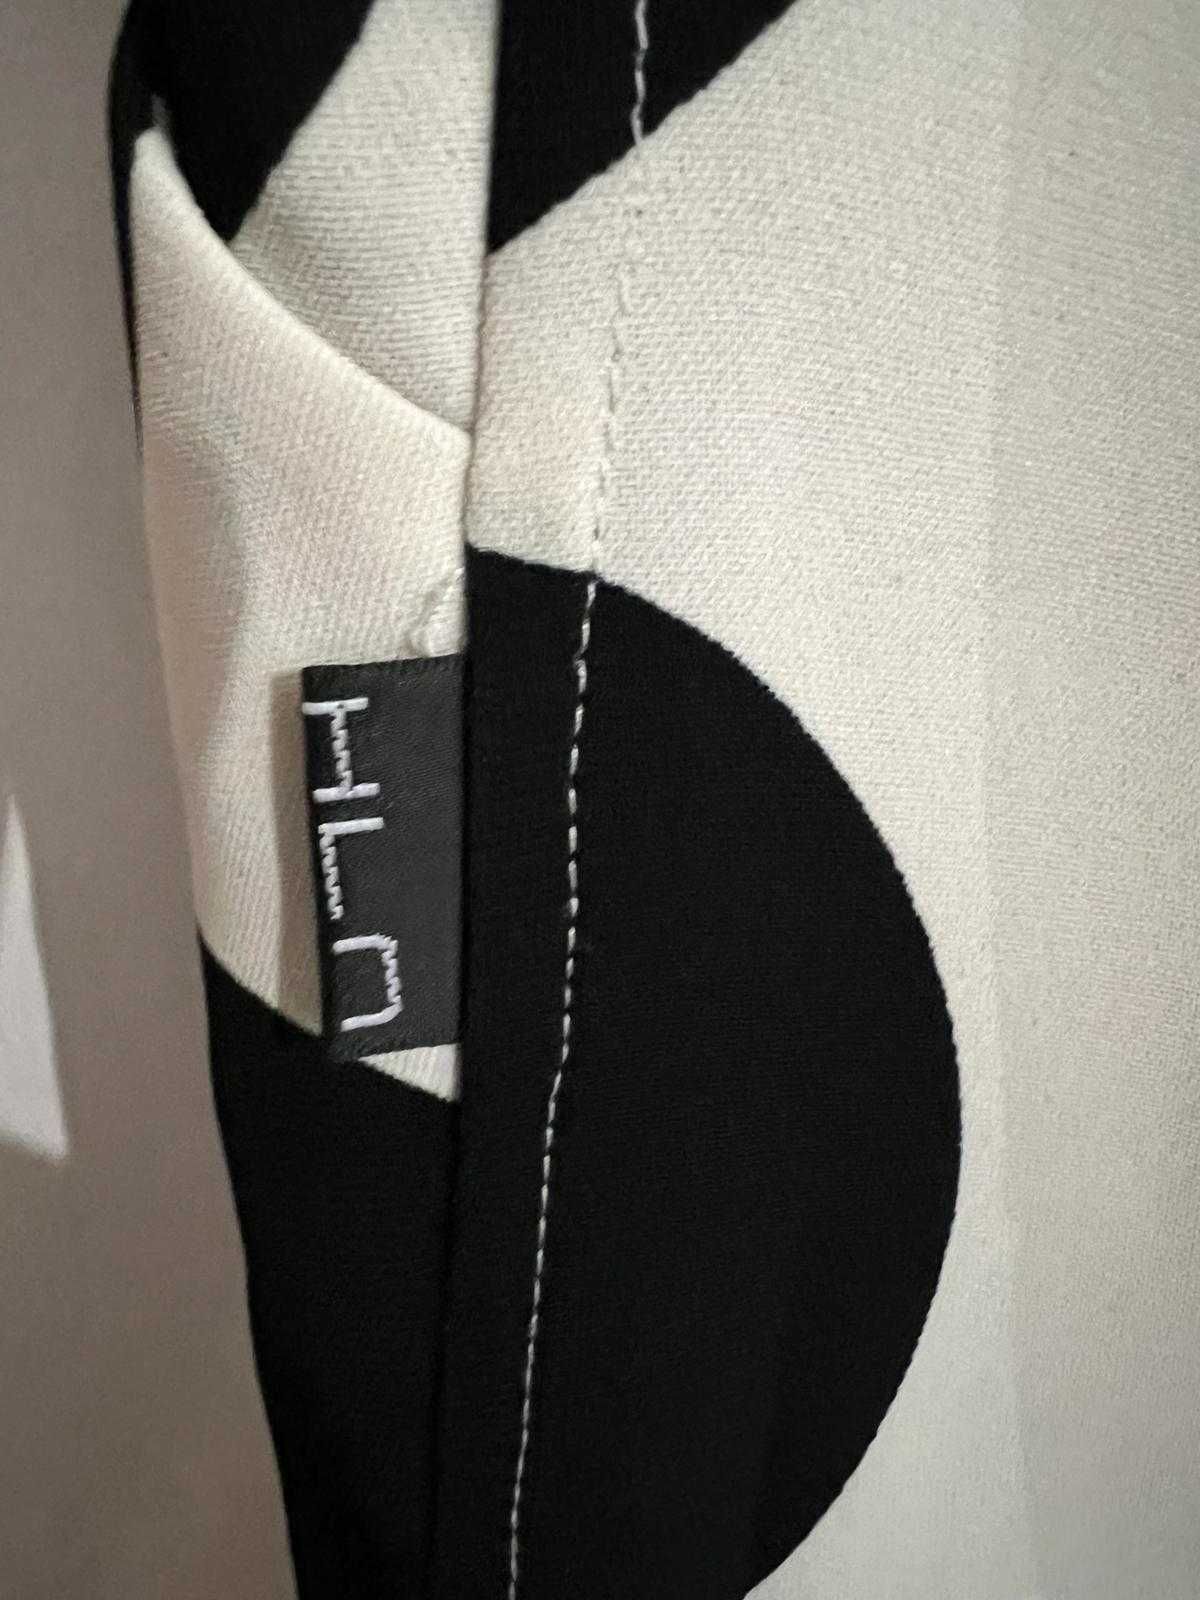 fusta medie alba cu buline negre, cu buzunare, marca HLN, marimea 40 M